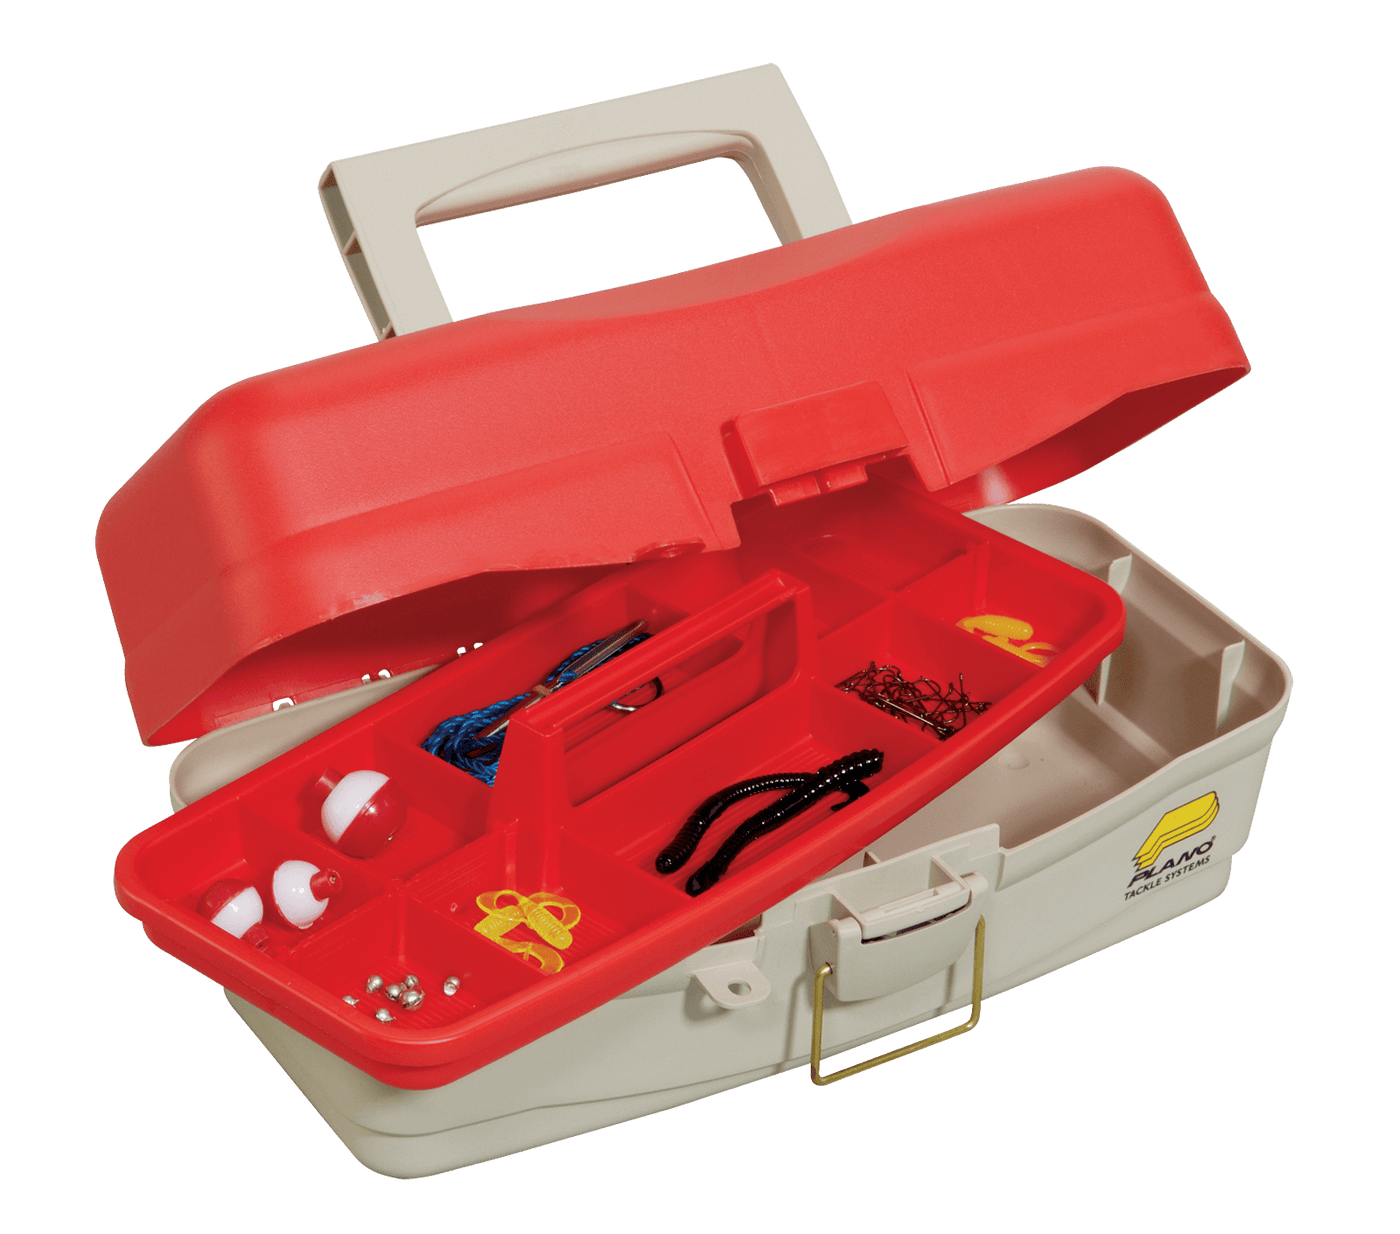 Plano 5000 Kids Take Me Fishing Tackle Box Kit – White Water